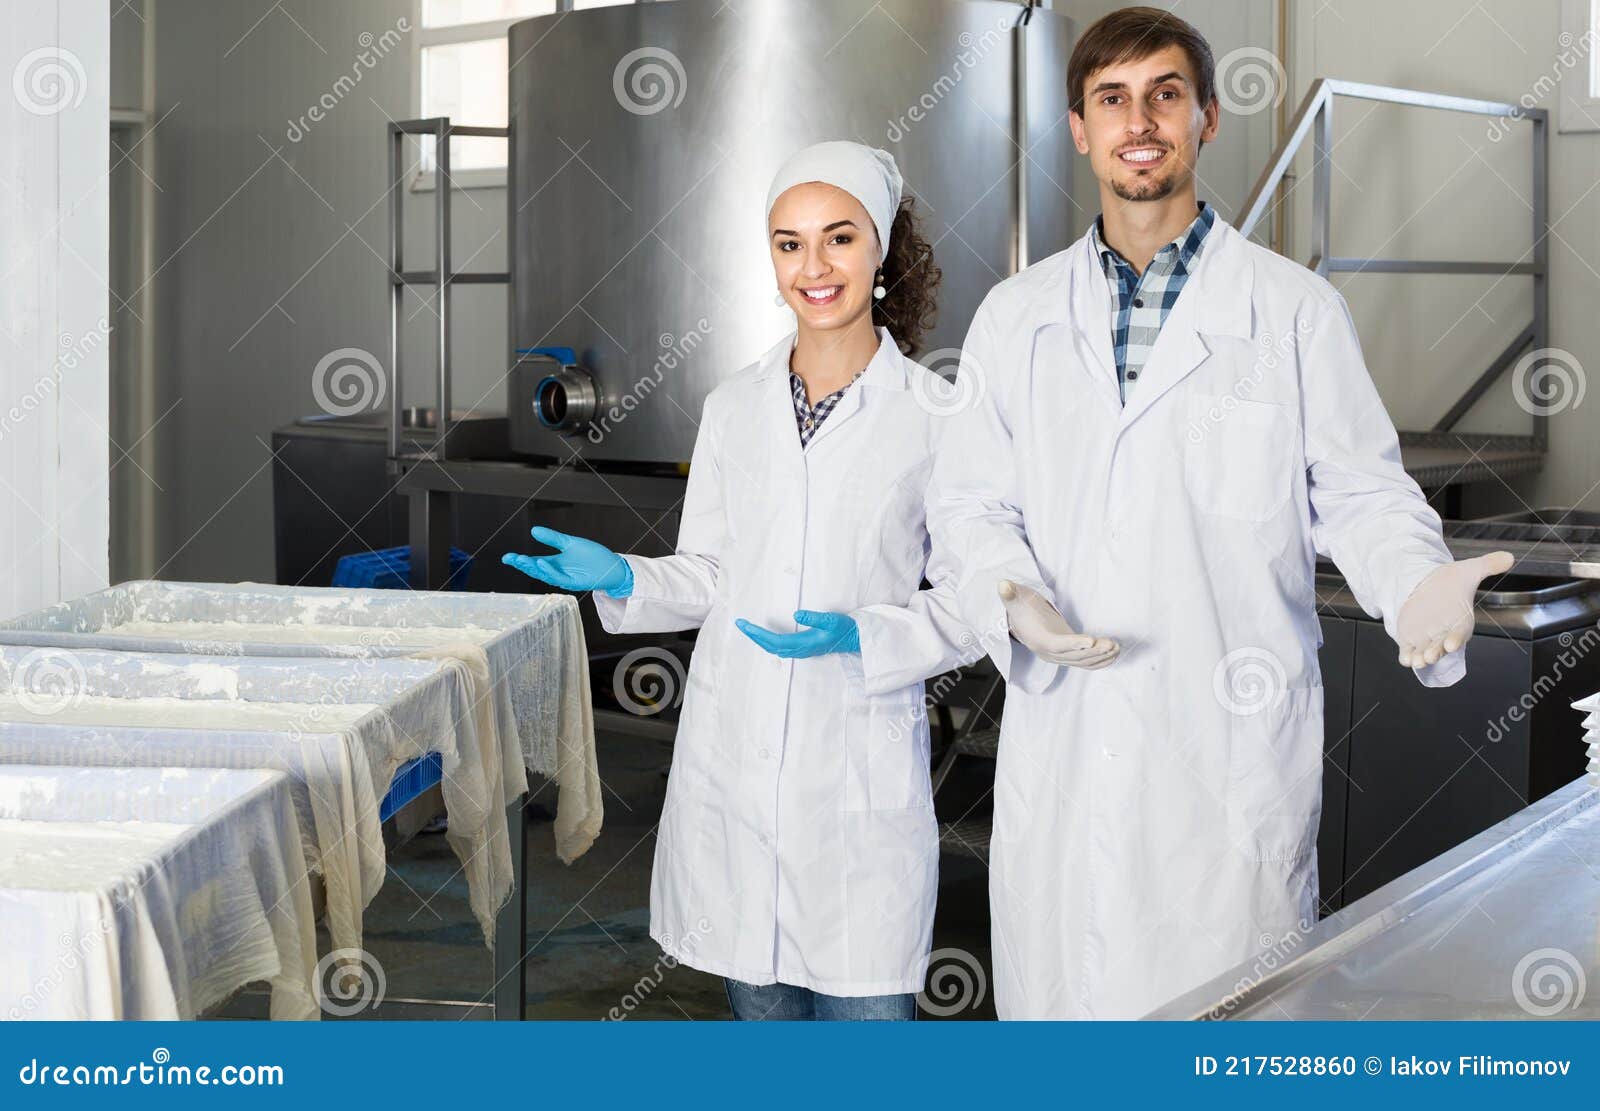 Retrato De Hombre Y Mujer Vestidos Con Batas De Laboratorio Se Ven Felices  En La Fábrica Foto de archivo - Imagen de control, alegre: 217528860